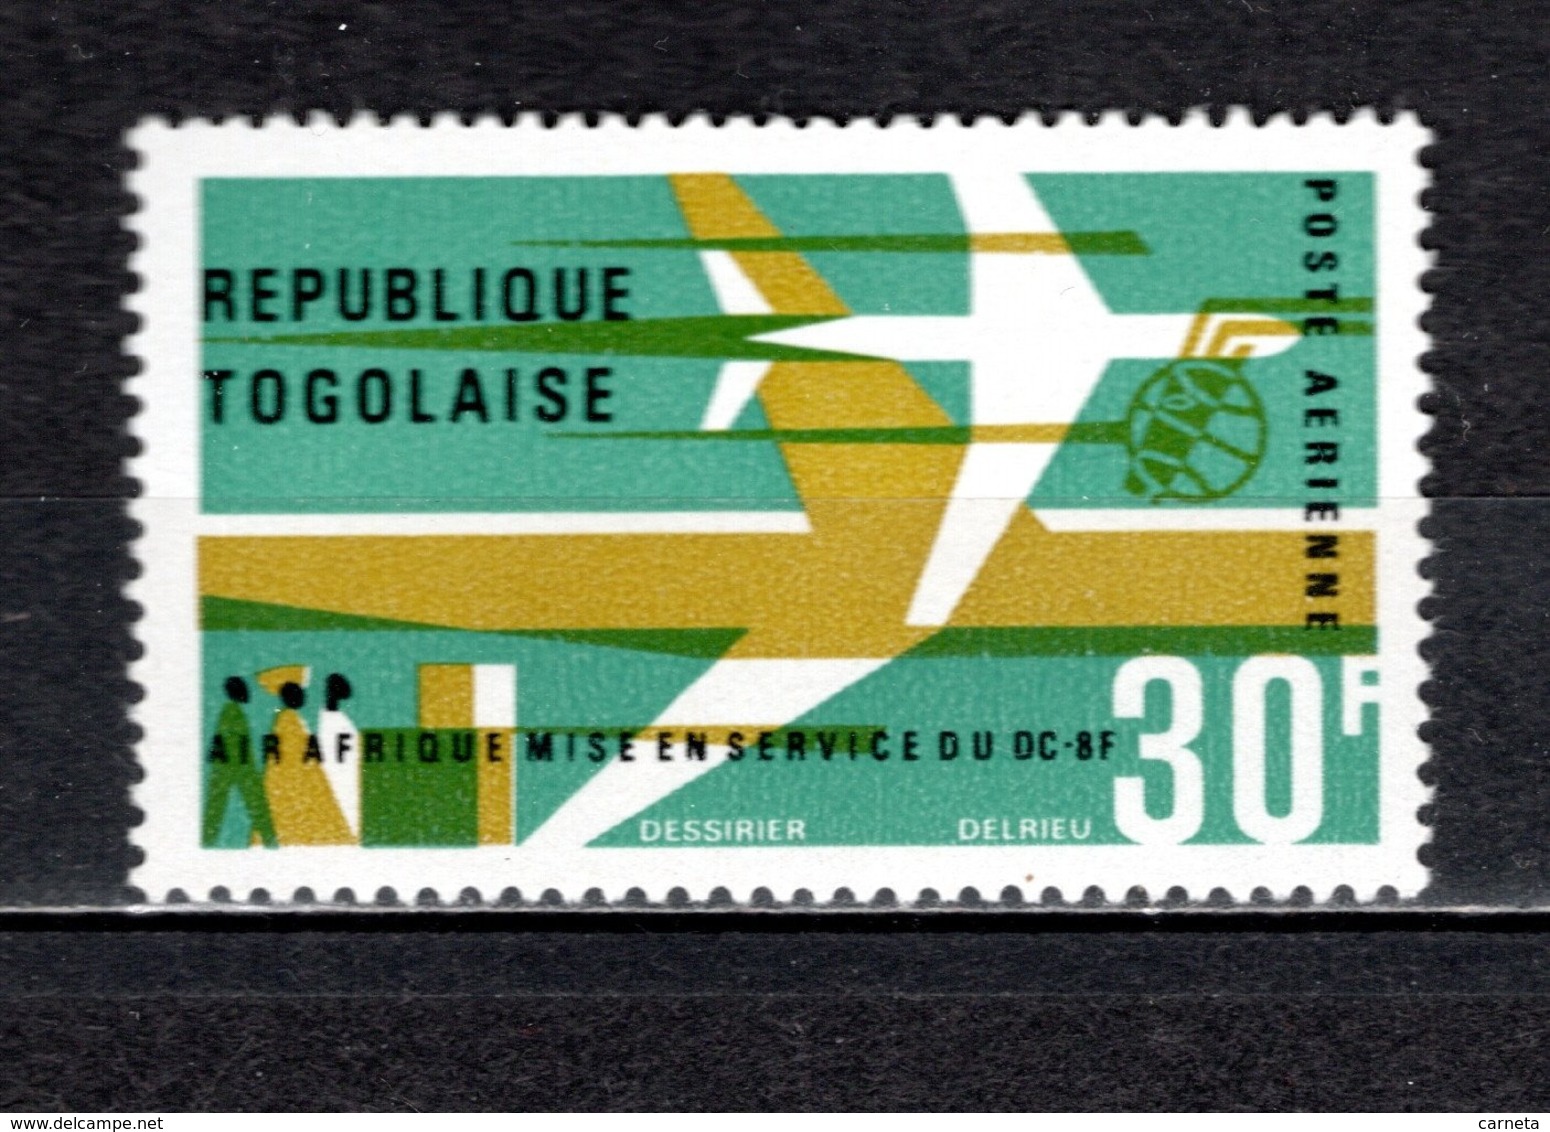 TOGO PA  N° 54  NEUF SANS CHARNIERE COTE  1.00€  AVION DC 8 - Togo (1960-...)